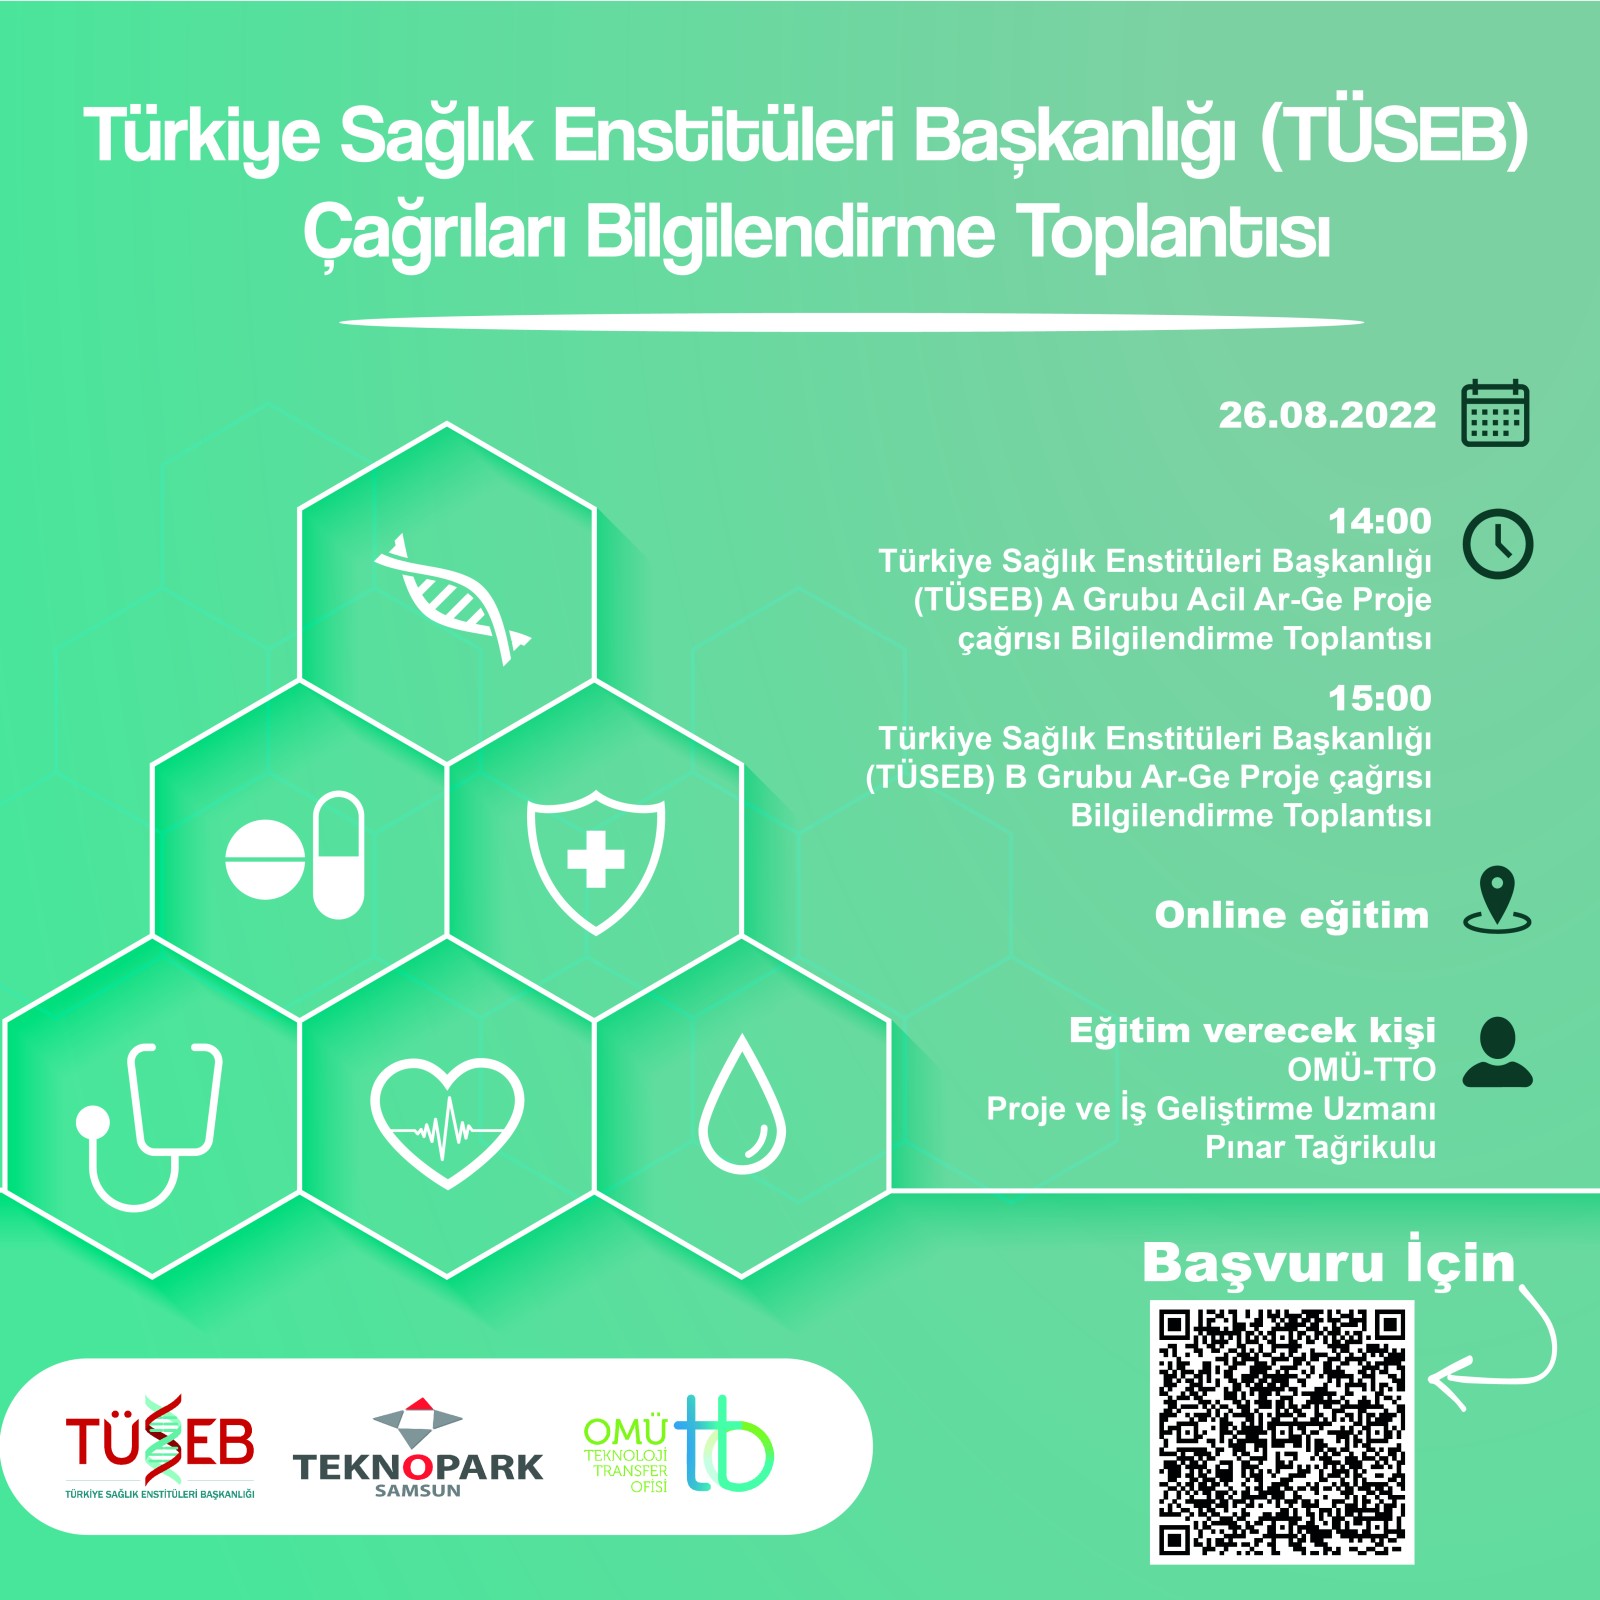 Türkiye Sağlık Enstitüleri Başkanlığı (TÜSEB) Çağrıları Bilgilendirme Toplantısı